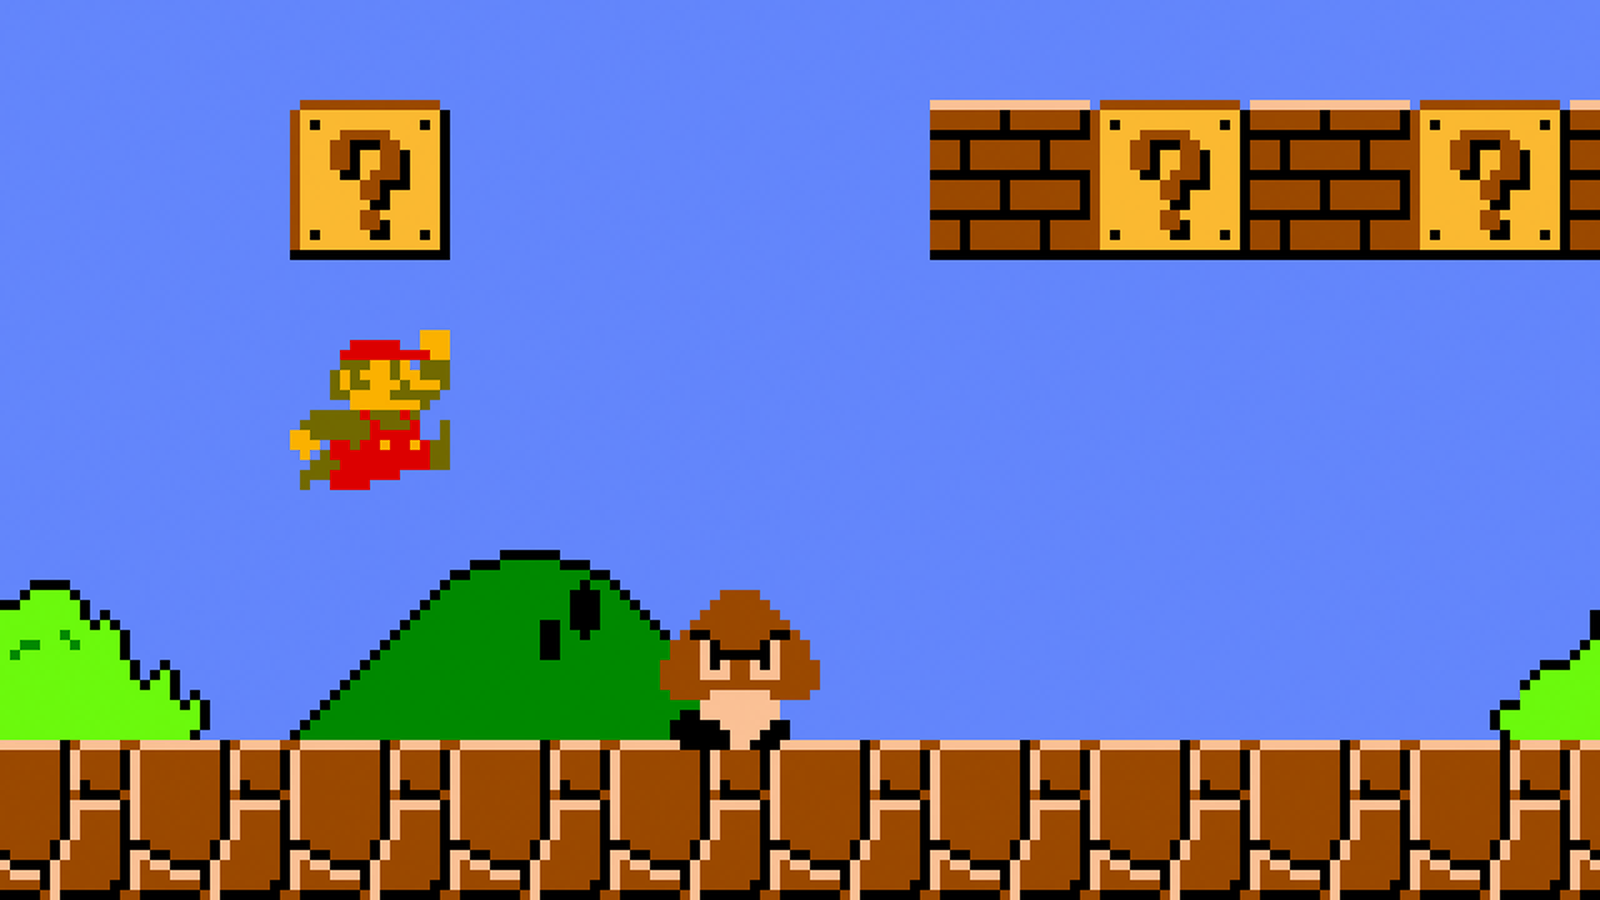 Super Mario Bros. (1985) for the Nintendo Entertainment